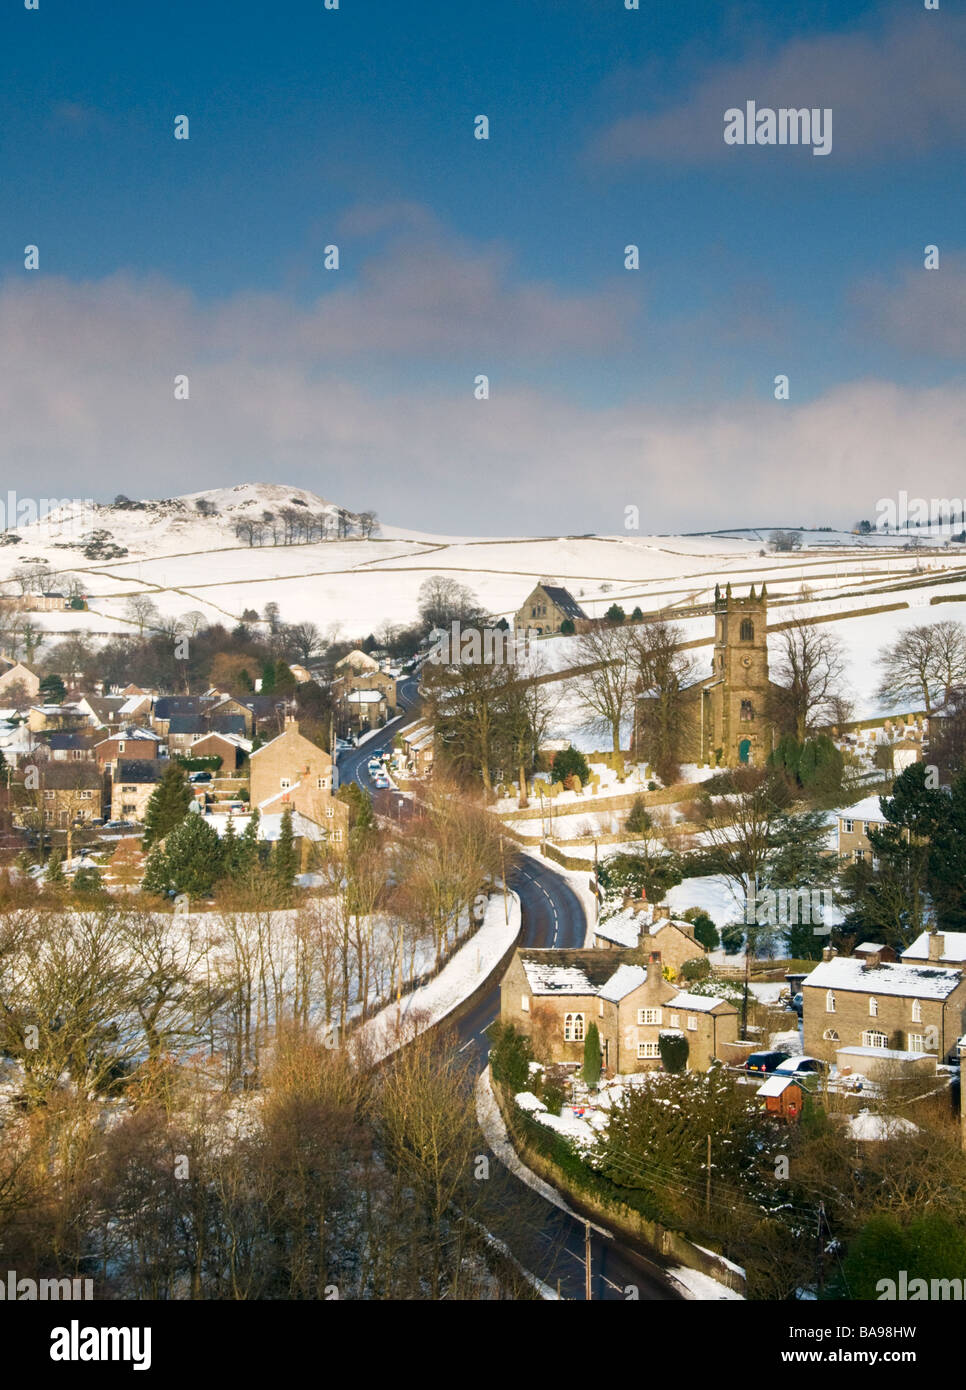 Village de Rainow en hiver, parc national de Peak District, Cheshire, England, UK Banque D'Images